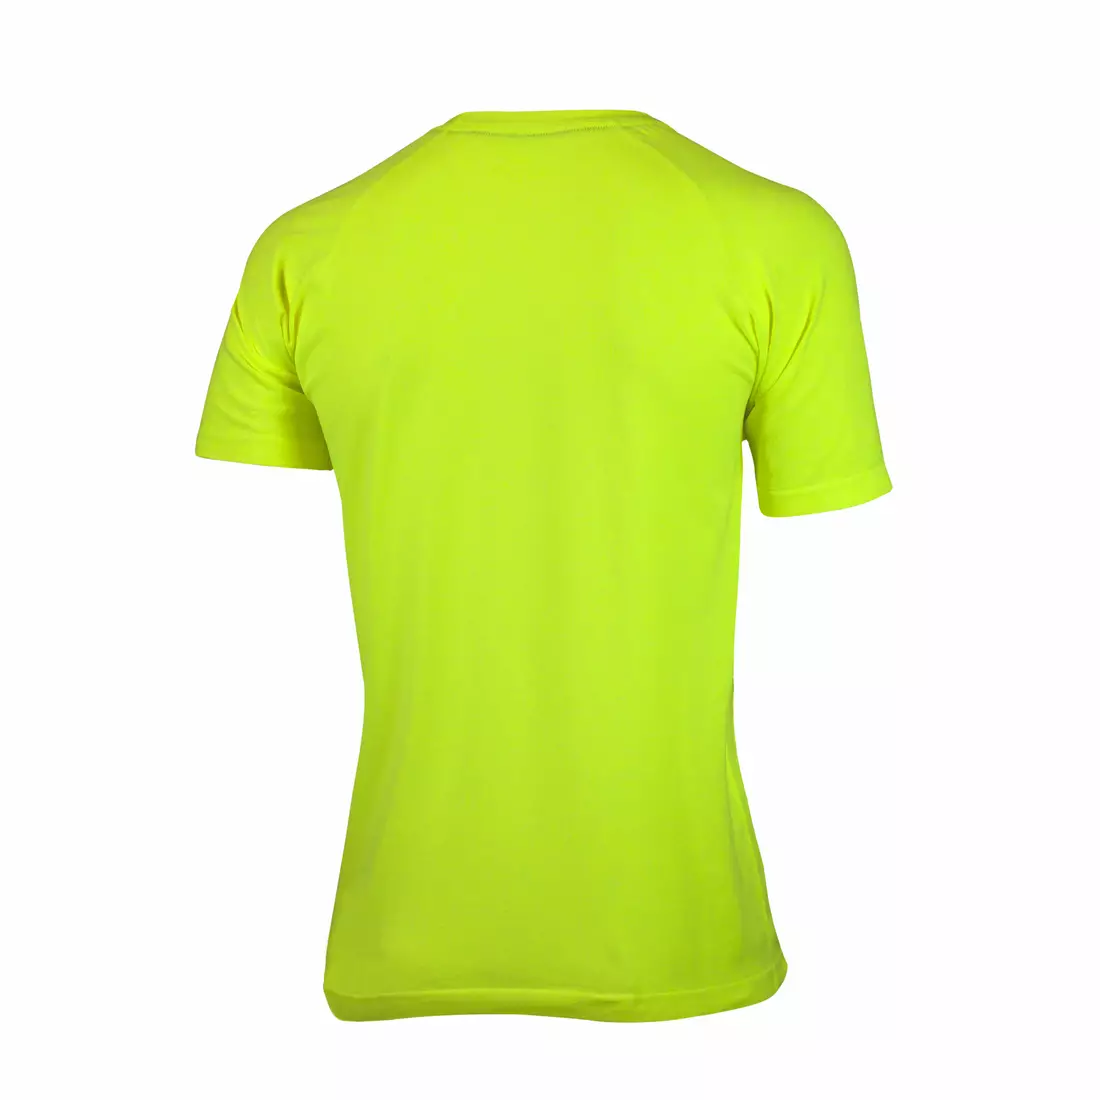 https://www.mikesport.eu/img/imagecache/10001-11000/product-media/ROGELLI-RUN-SEAMLESS-seamless-men-s-running-T-shirt-800-271-fluor-36722-1100x1100.webp